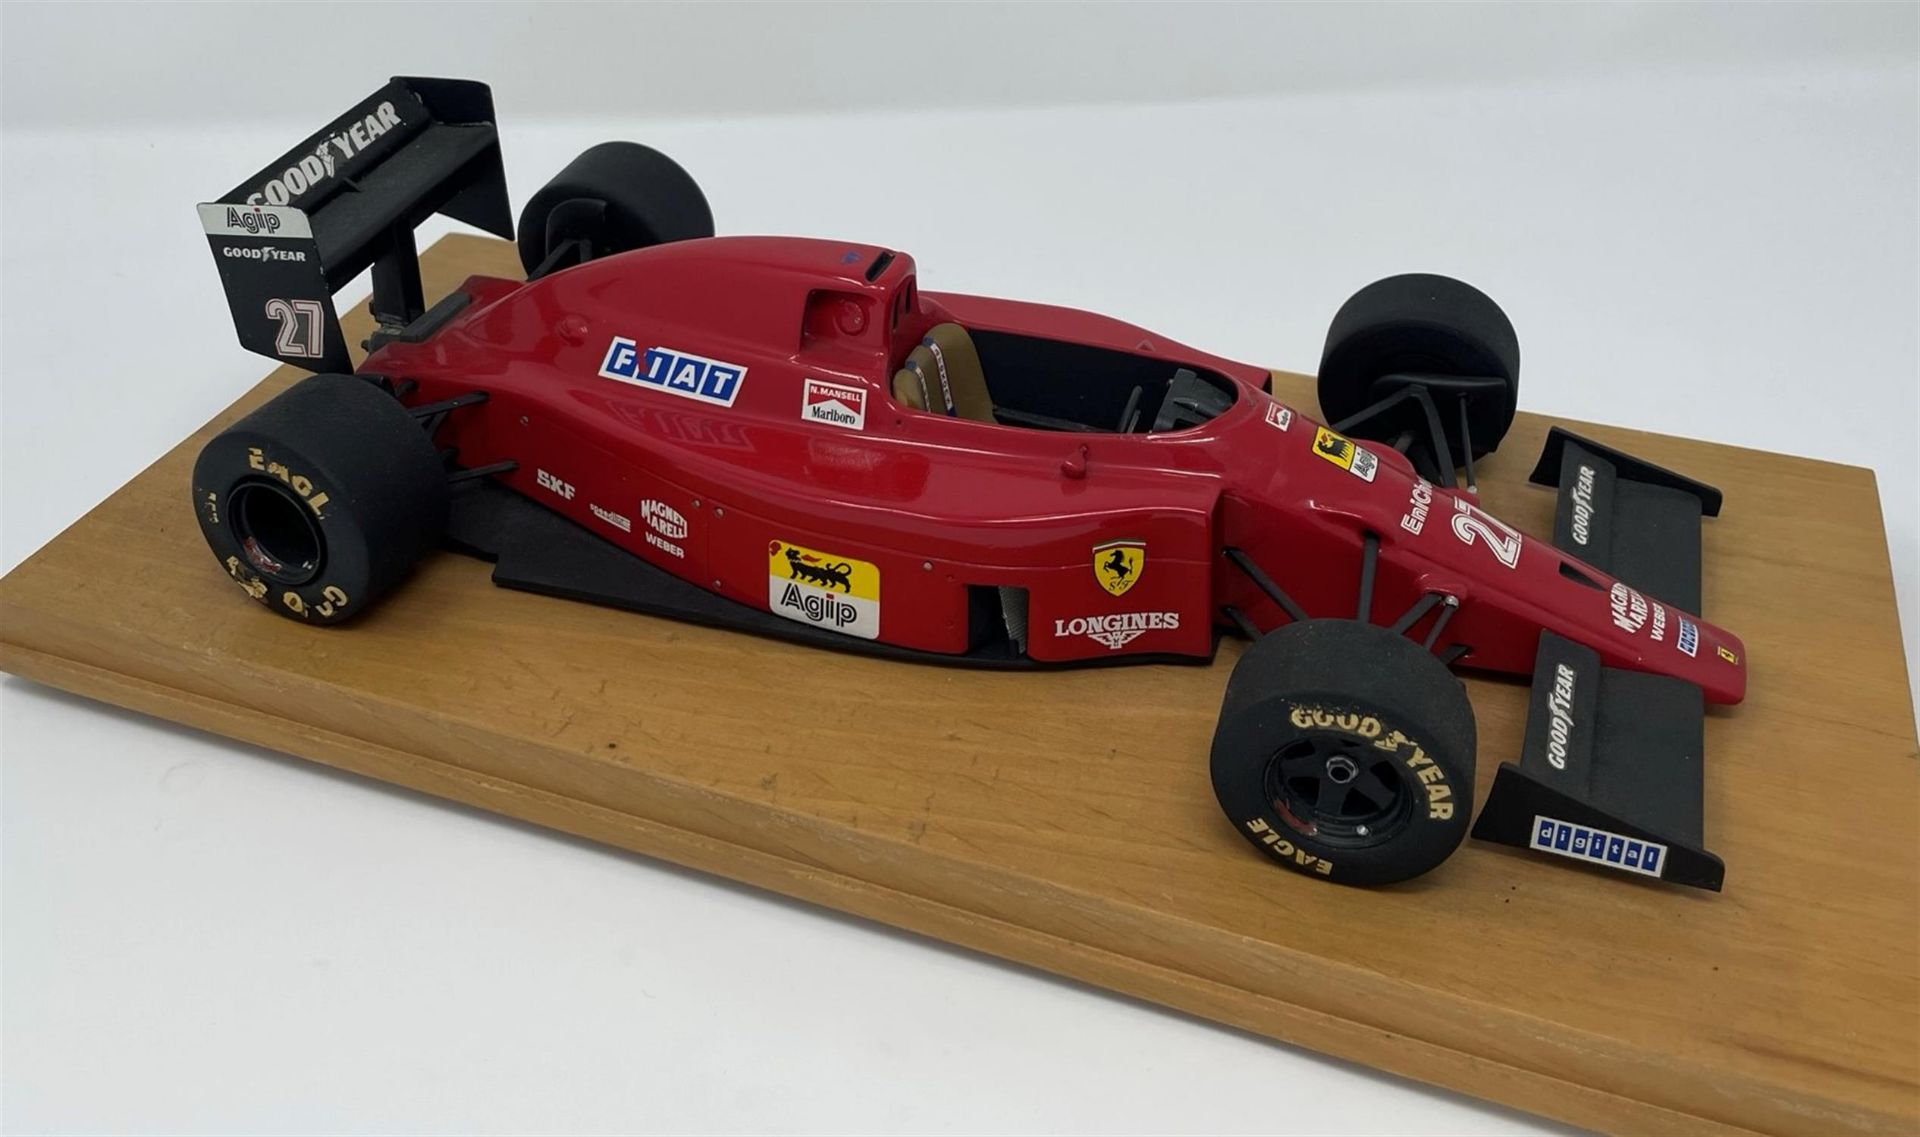 Hand-built model of Nigel Mansell's 1990 Ferrari 641 - Image 3 of 10